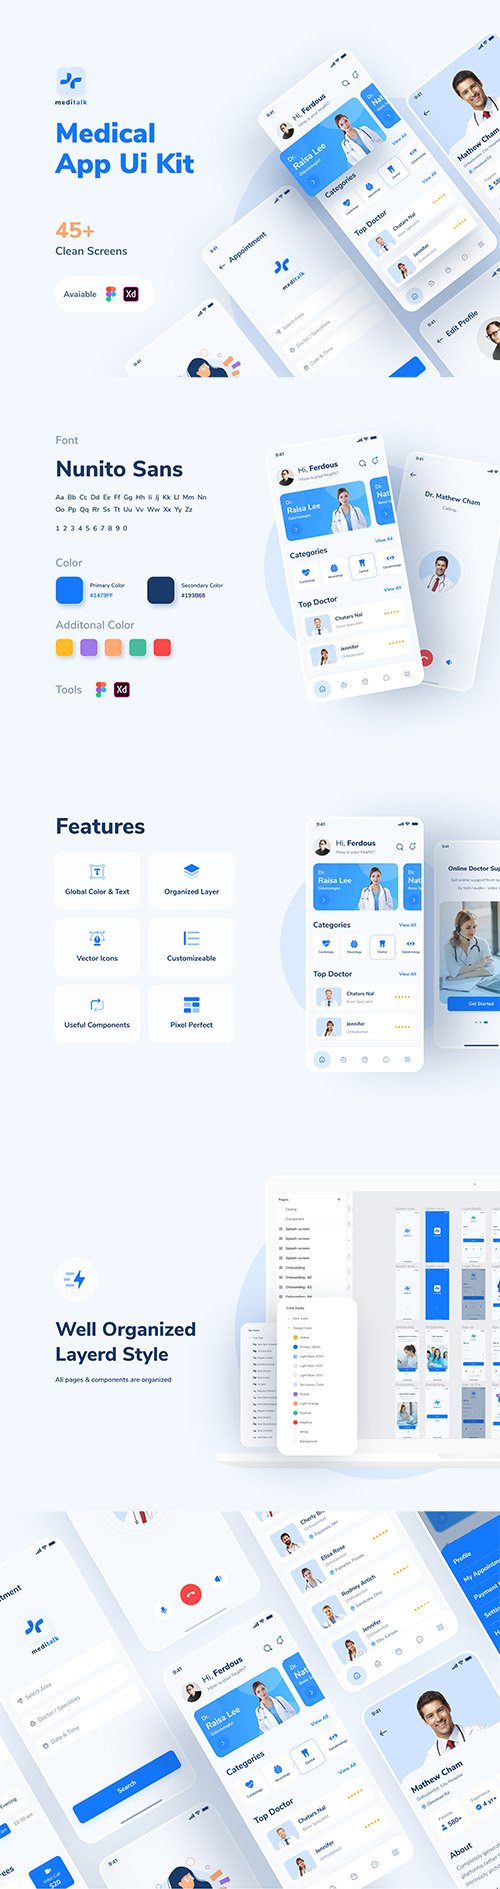 UI8 - MediTalk-Medical App UI Kit